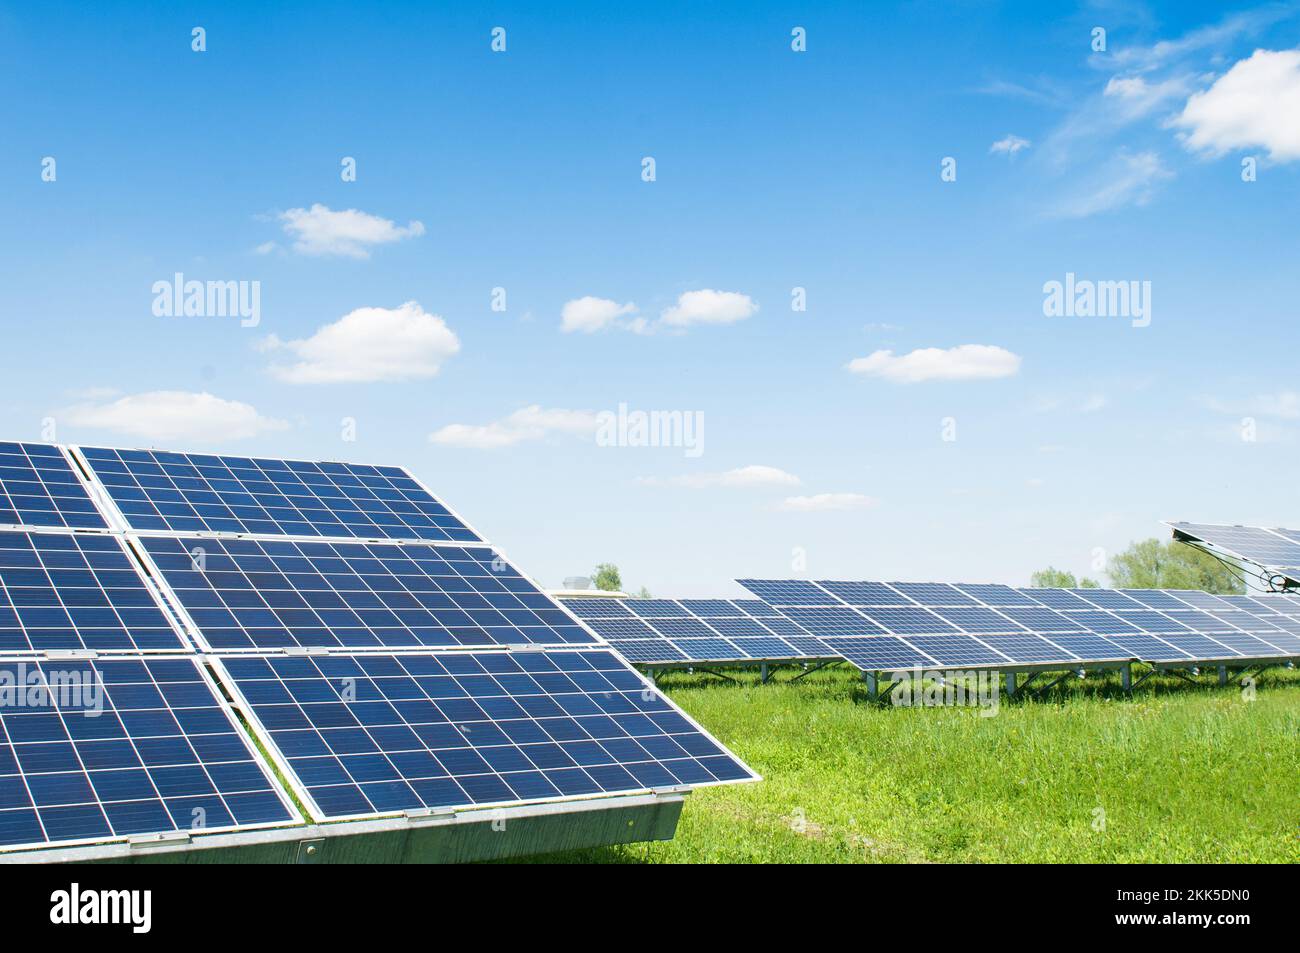 Paneles solares sobre el fondo del cielo. Planta de energía solar. Paneles solares azules. Fuente alternativa de electricidad. Granja solar. Foto de stock